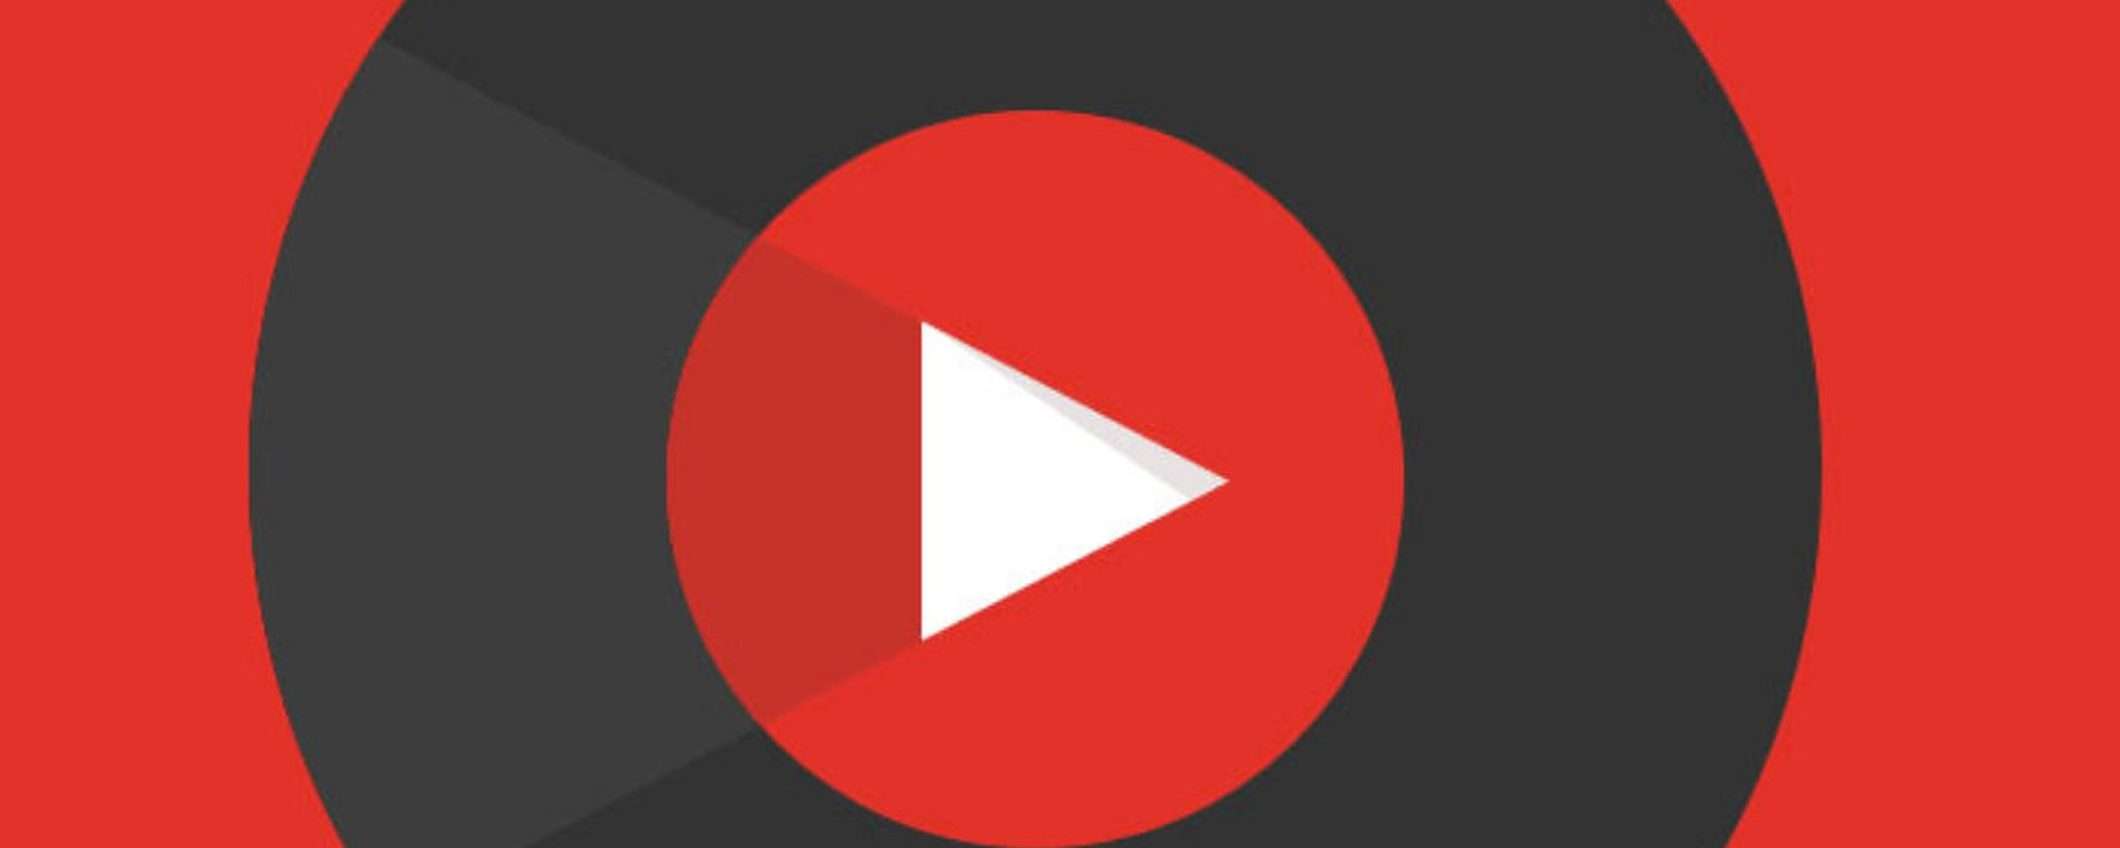 YouTube Music è finalmente disponibile su HomePod